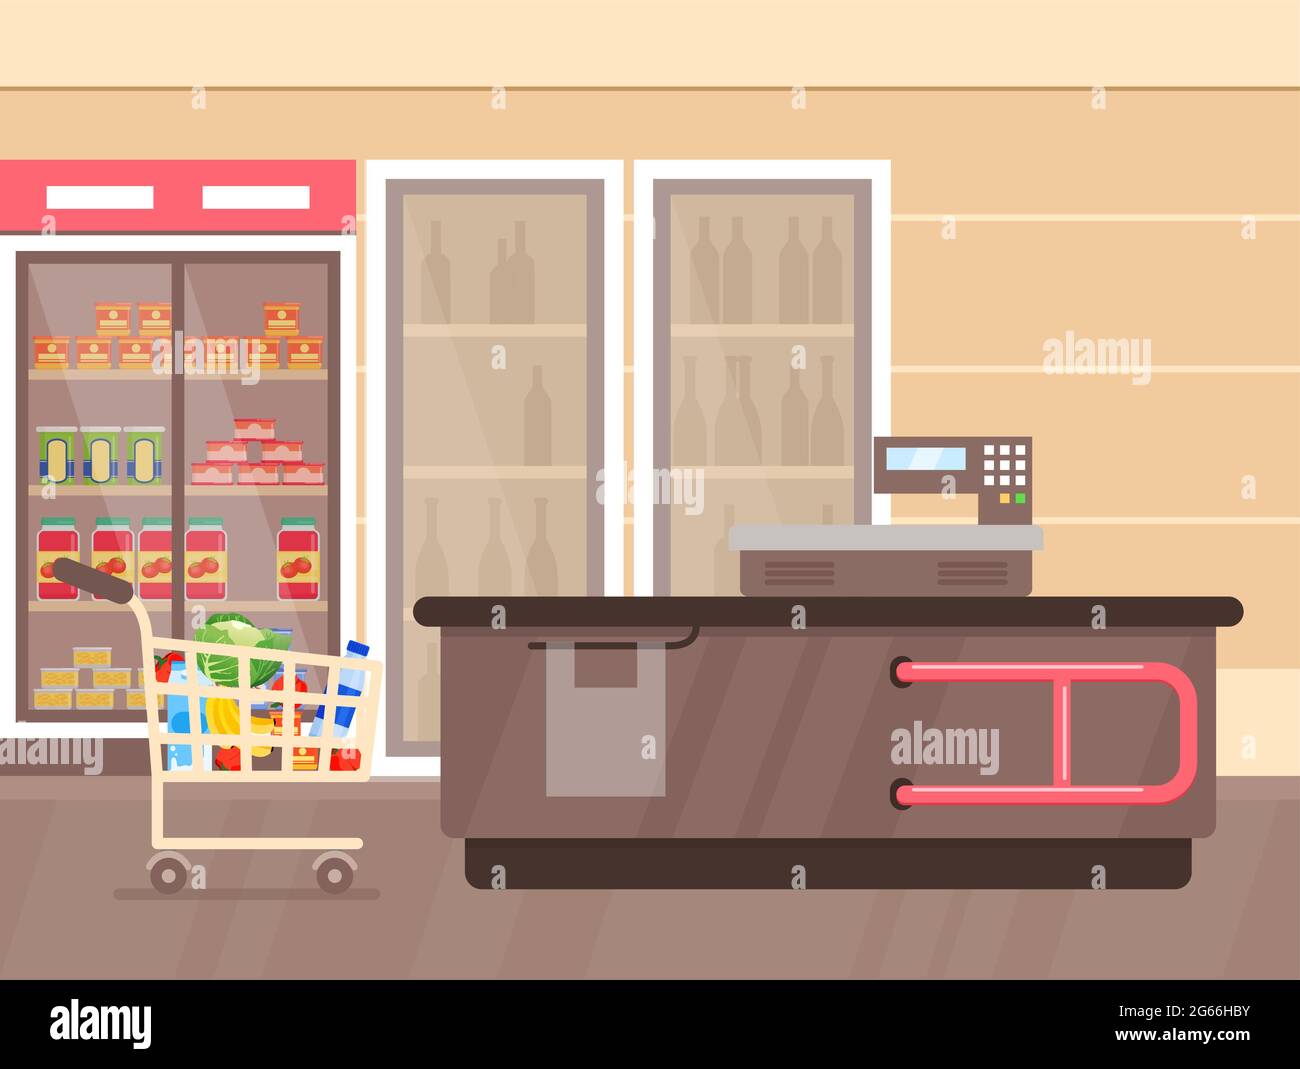 Illustrazione vettoriale dell'interno del supermercato con bancone e frigoriferi con bevande, scaffali e stand con prodotti e merci. Supermercato vuoto, linee Illustrazione Vettoriale